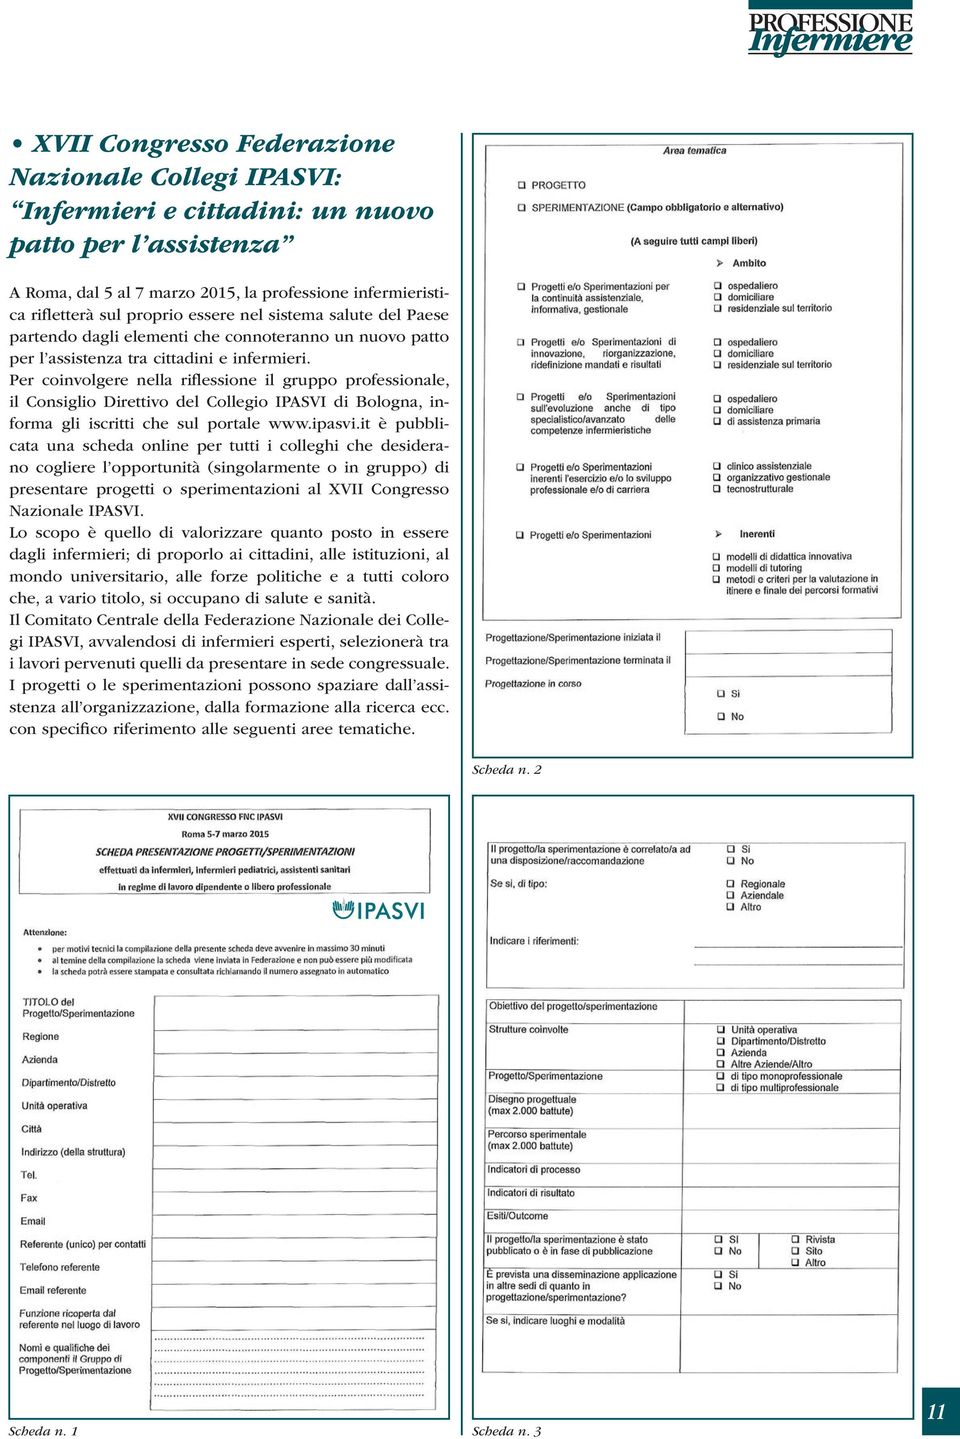 Per coinvolgere nella riflessione il gruppo professionale, il Consiglio Direttivo del Collegio IPASVI di Bologna, informa gli iscritti che sul portale www.ipasvi.